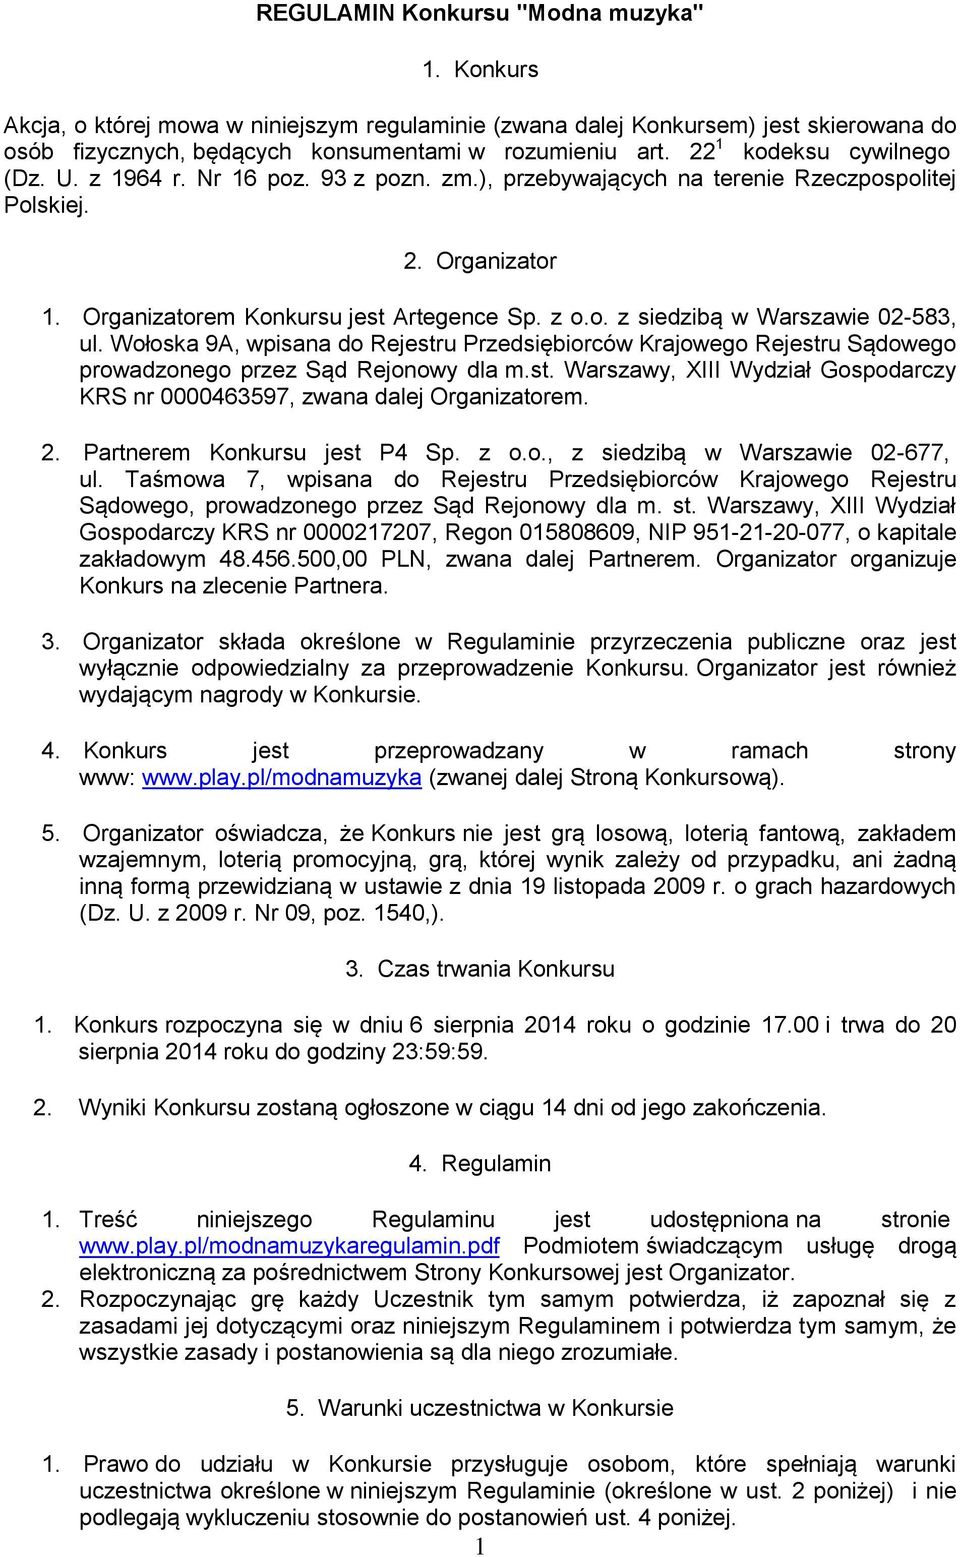 Wołoska 9A, wpisana do Rejestru Przedsiębiorców Krajowego Rejestru Sądowego prowadzonego przez Sąd Rejonowy dla m.st. Warszawy, XIII Wydział Gospodarczy KRS nr 0000463597, zwana dalej Organizatorem.